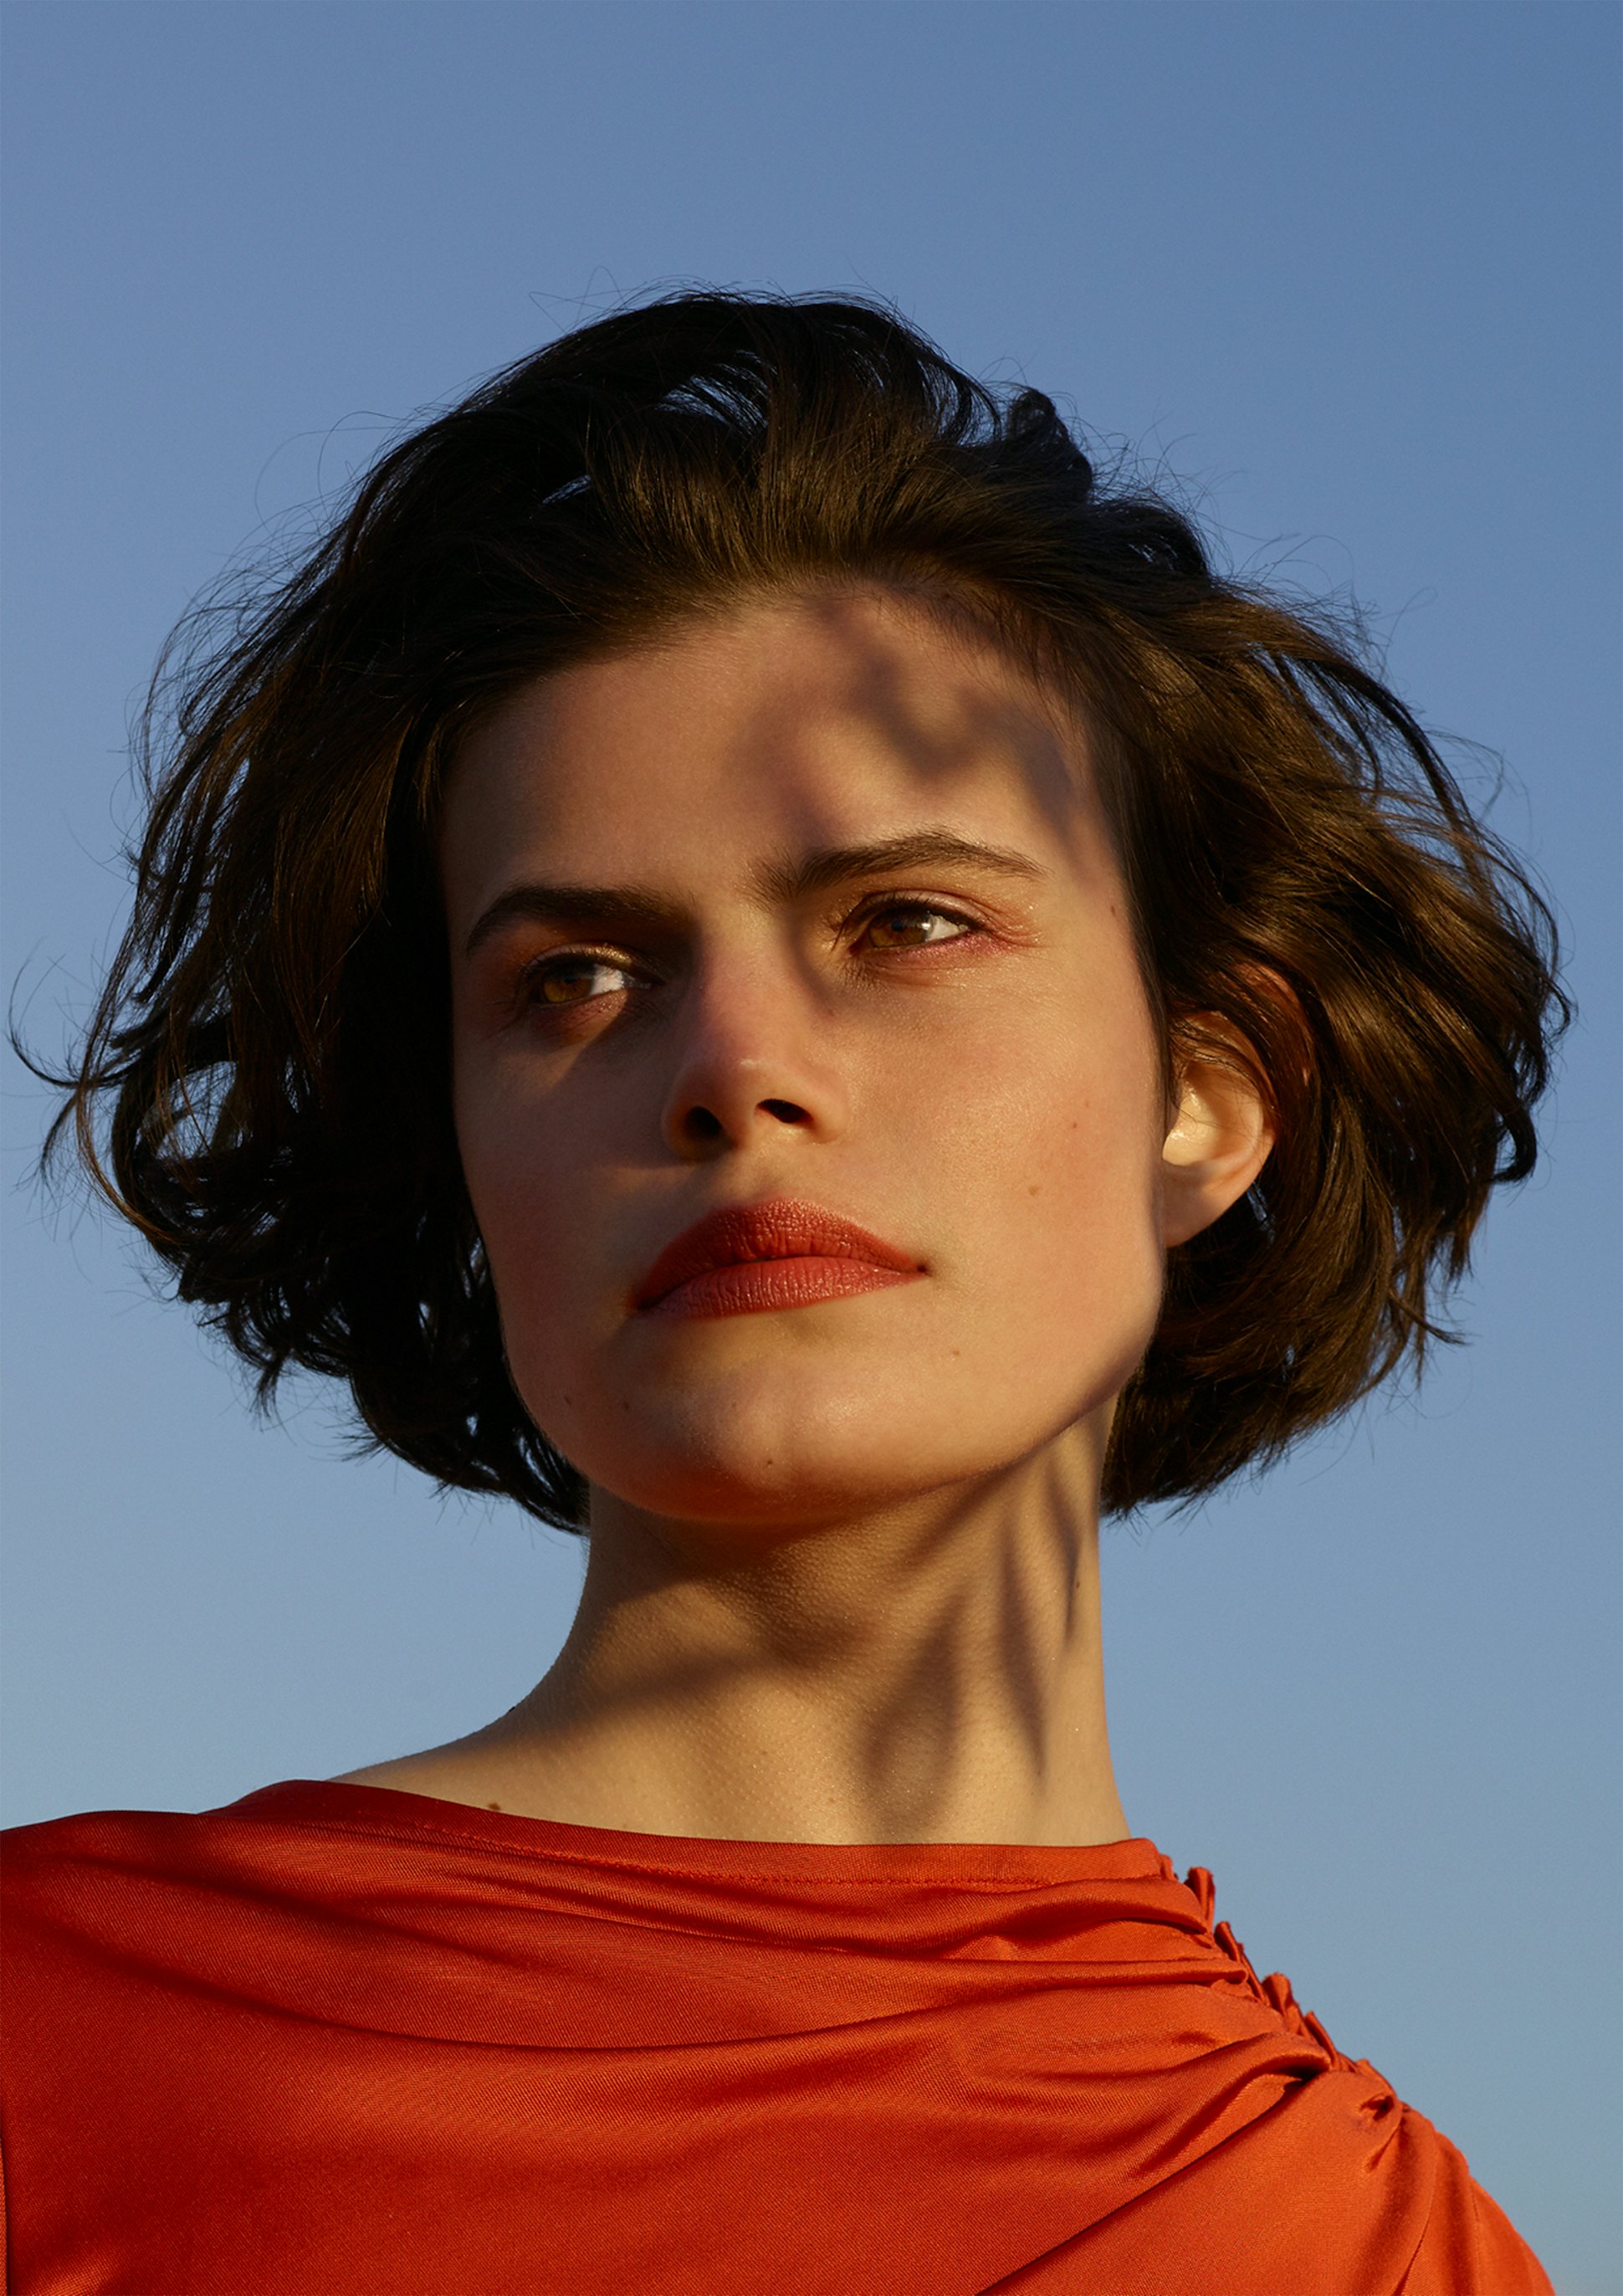 La bouche rouge image de la campagne réalisée par la photographe Viviane Sassen 